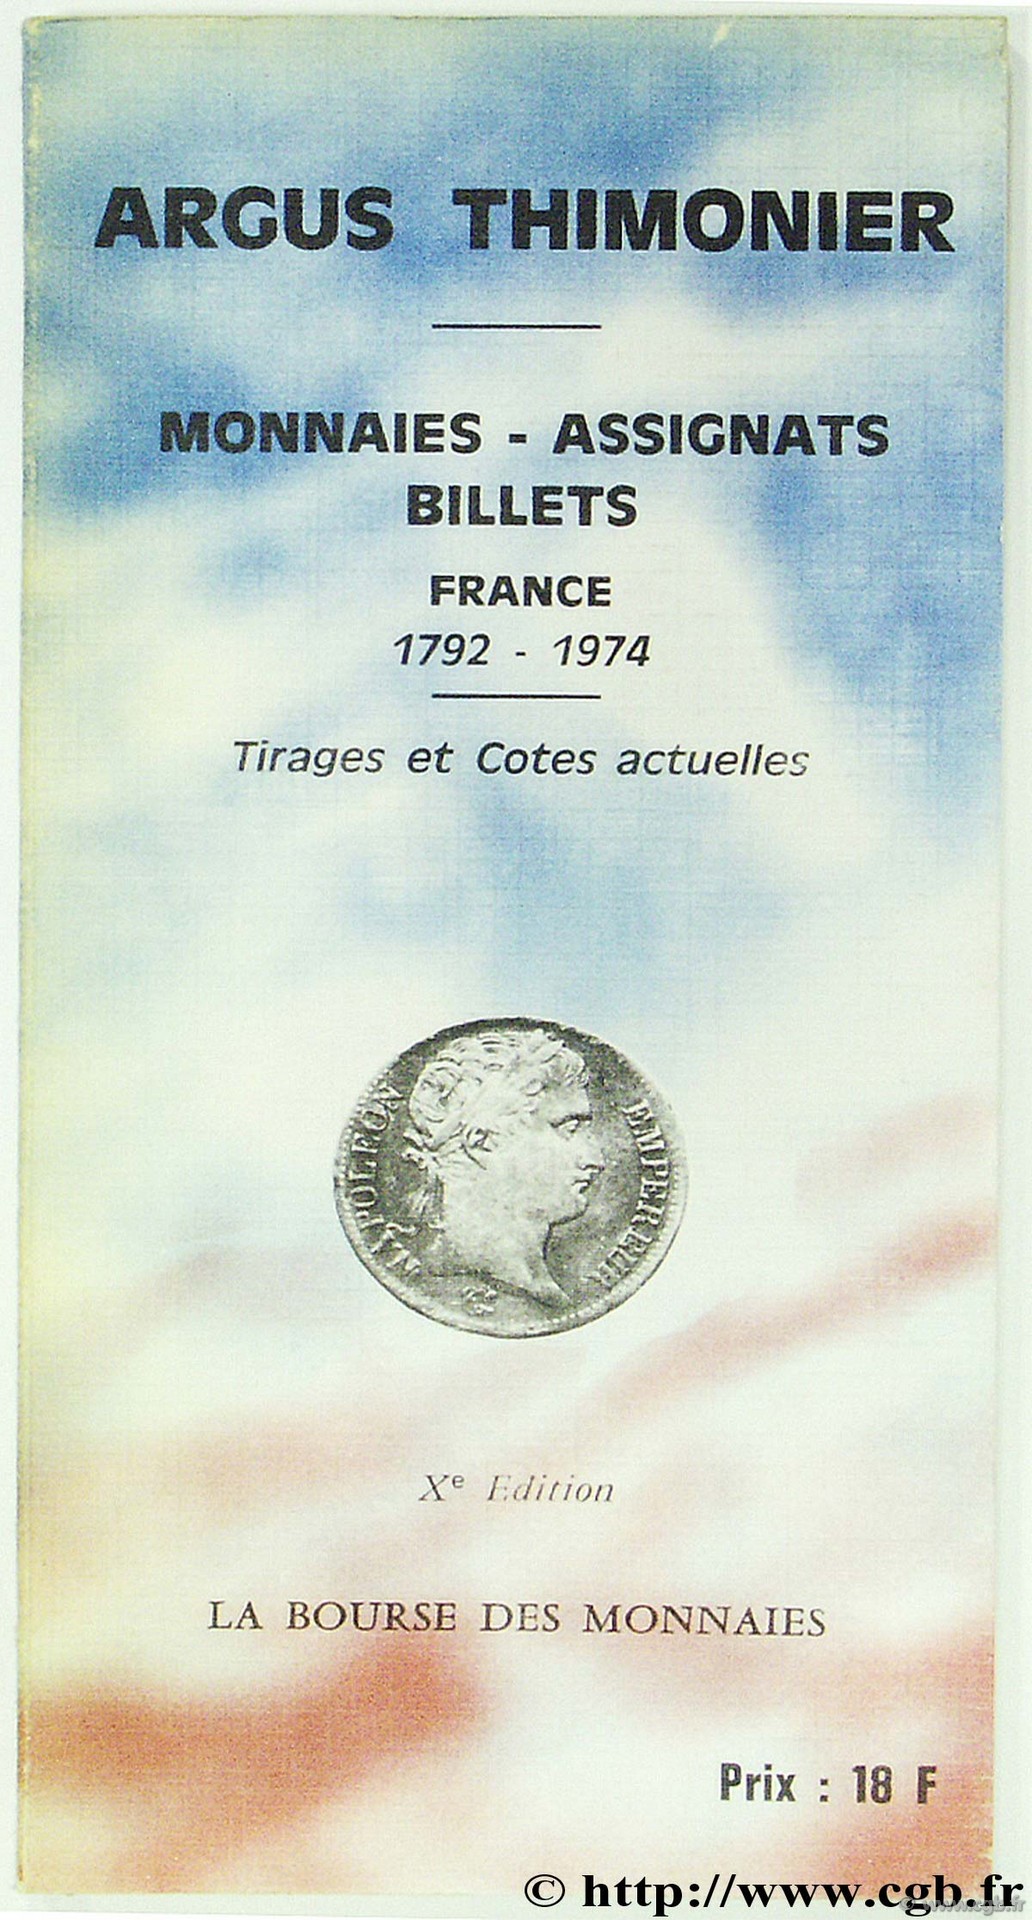 Argus Thimonier - monnaies - assignats - billets France 1792-1974  THIMONIER